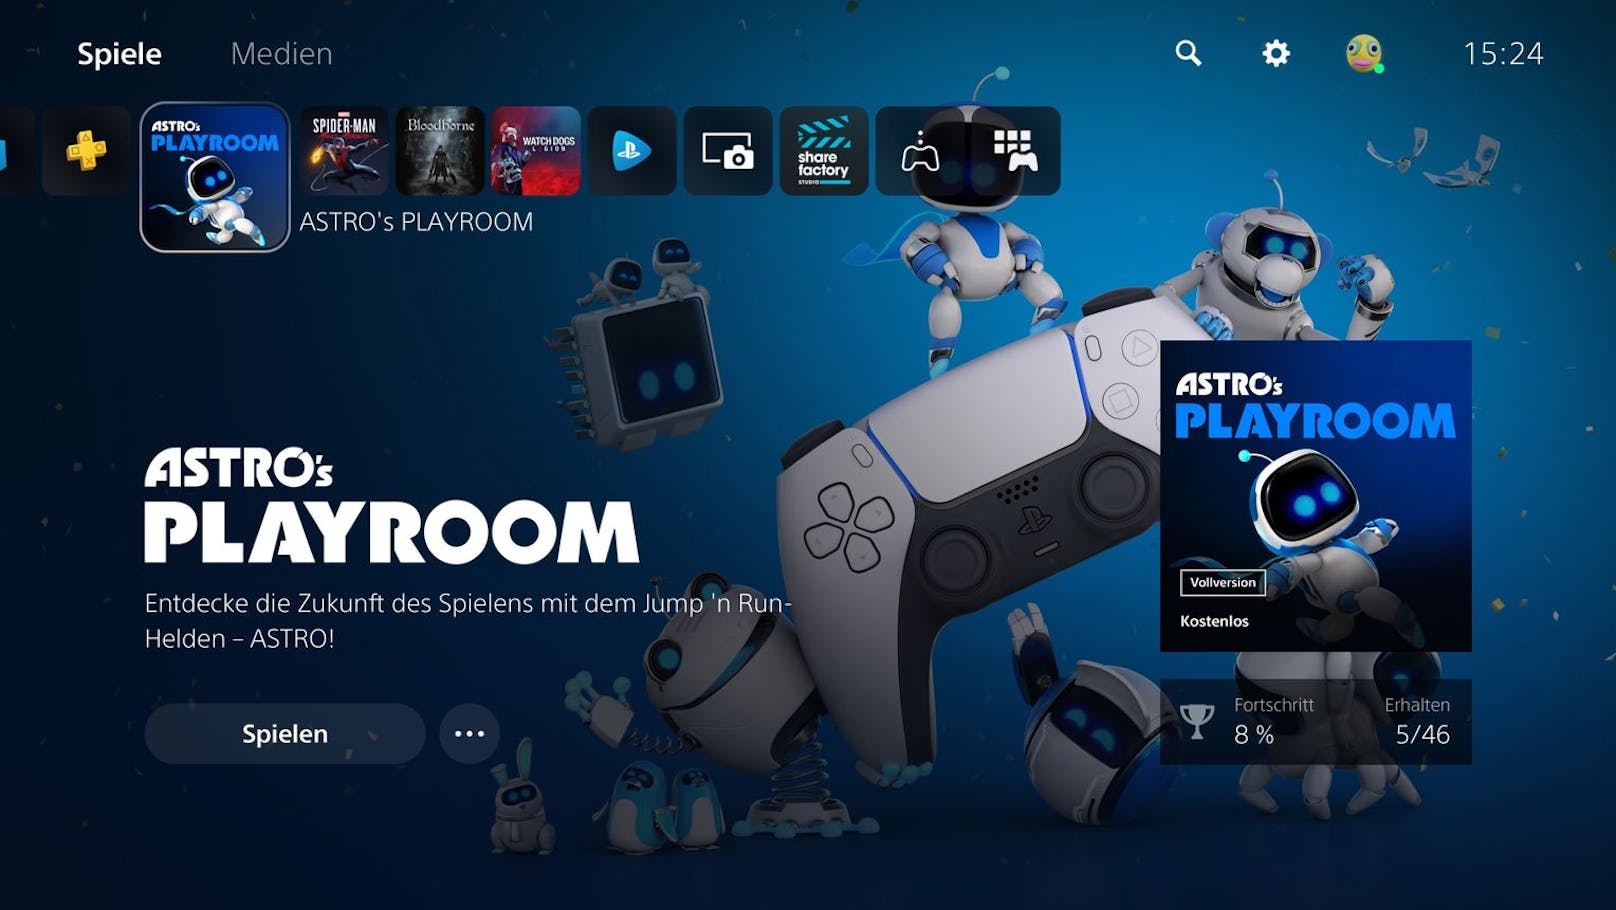 So sieht die neue Benutzeroberfläche aus. Bei der Auswahl des Spiels passt sich die Oberfläche an den jeweiligen Inhalt wie hier "Astro's Playroom" an.